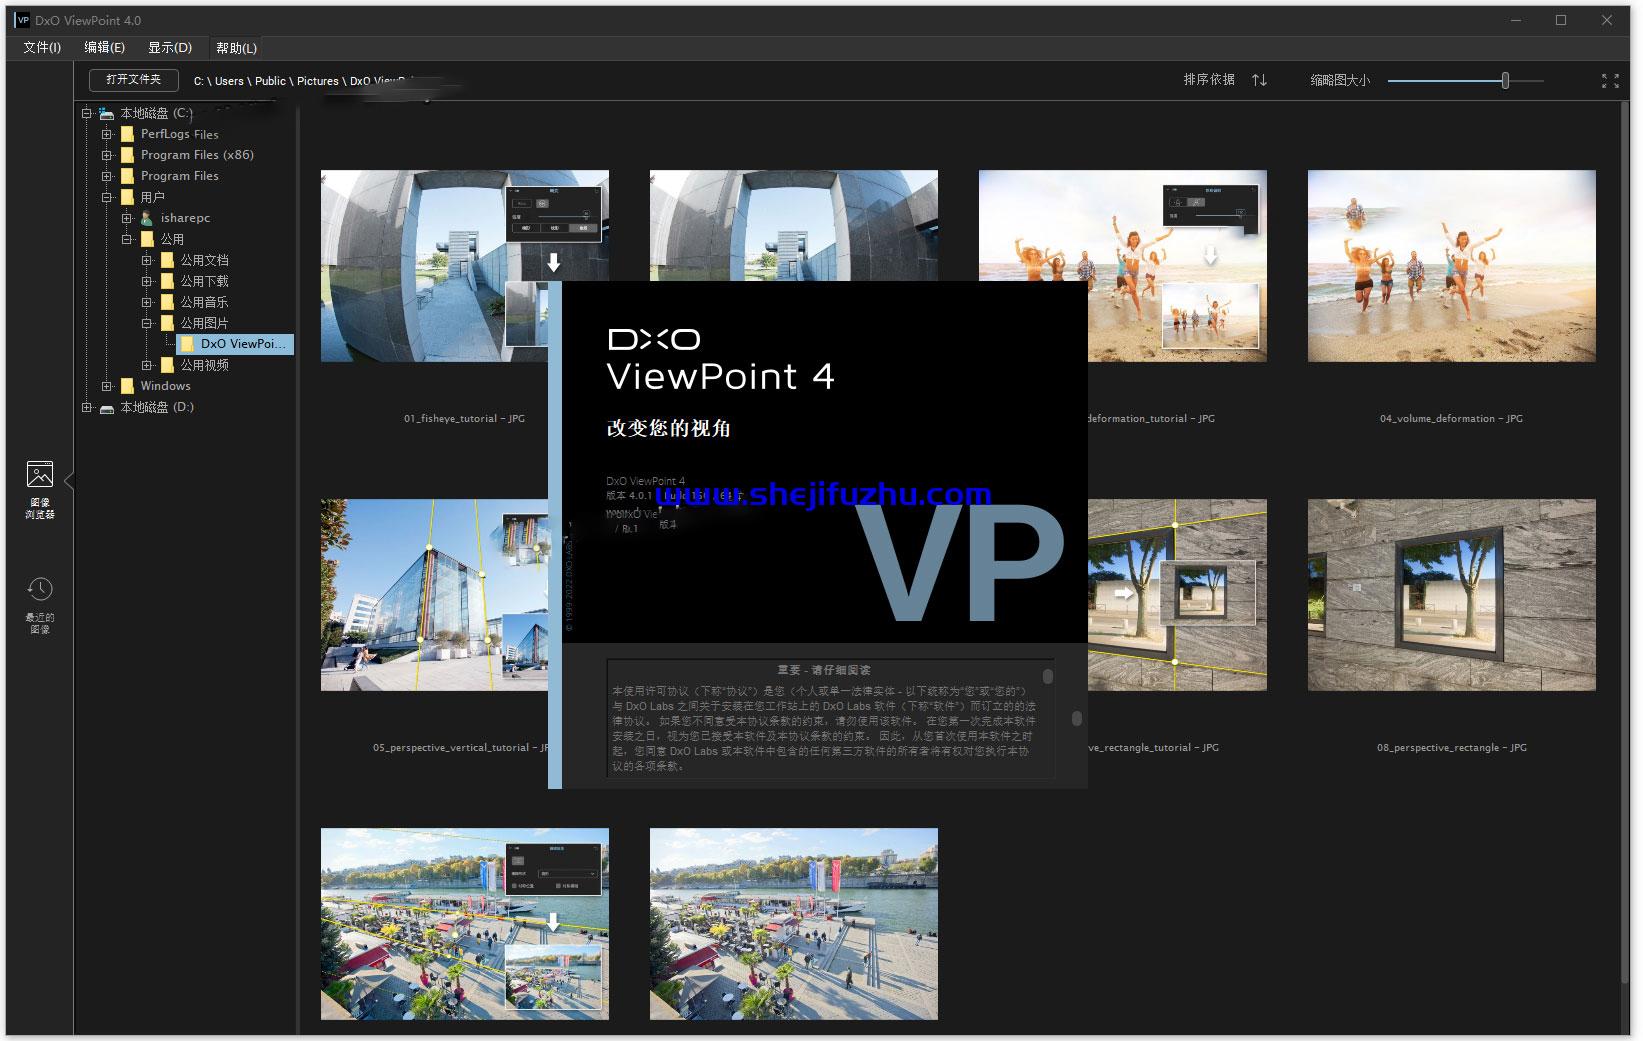 DxO-ViewPoint-4.0.1-1.jpg